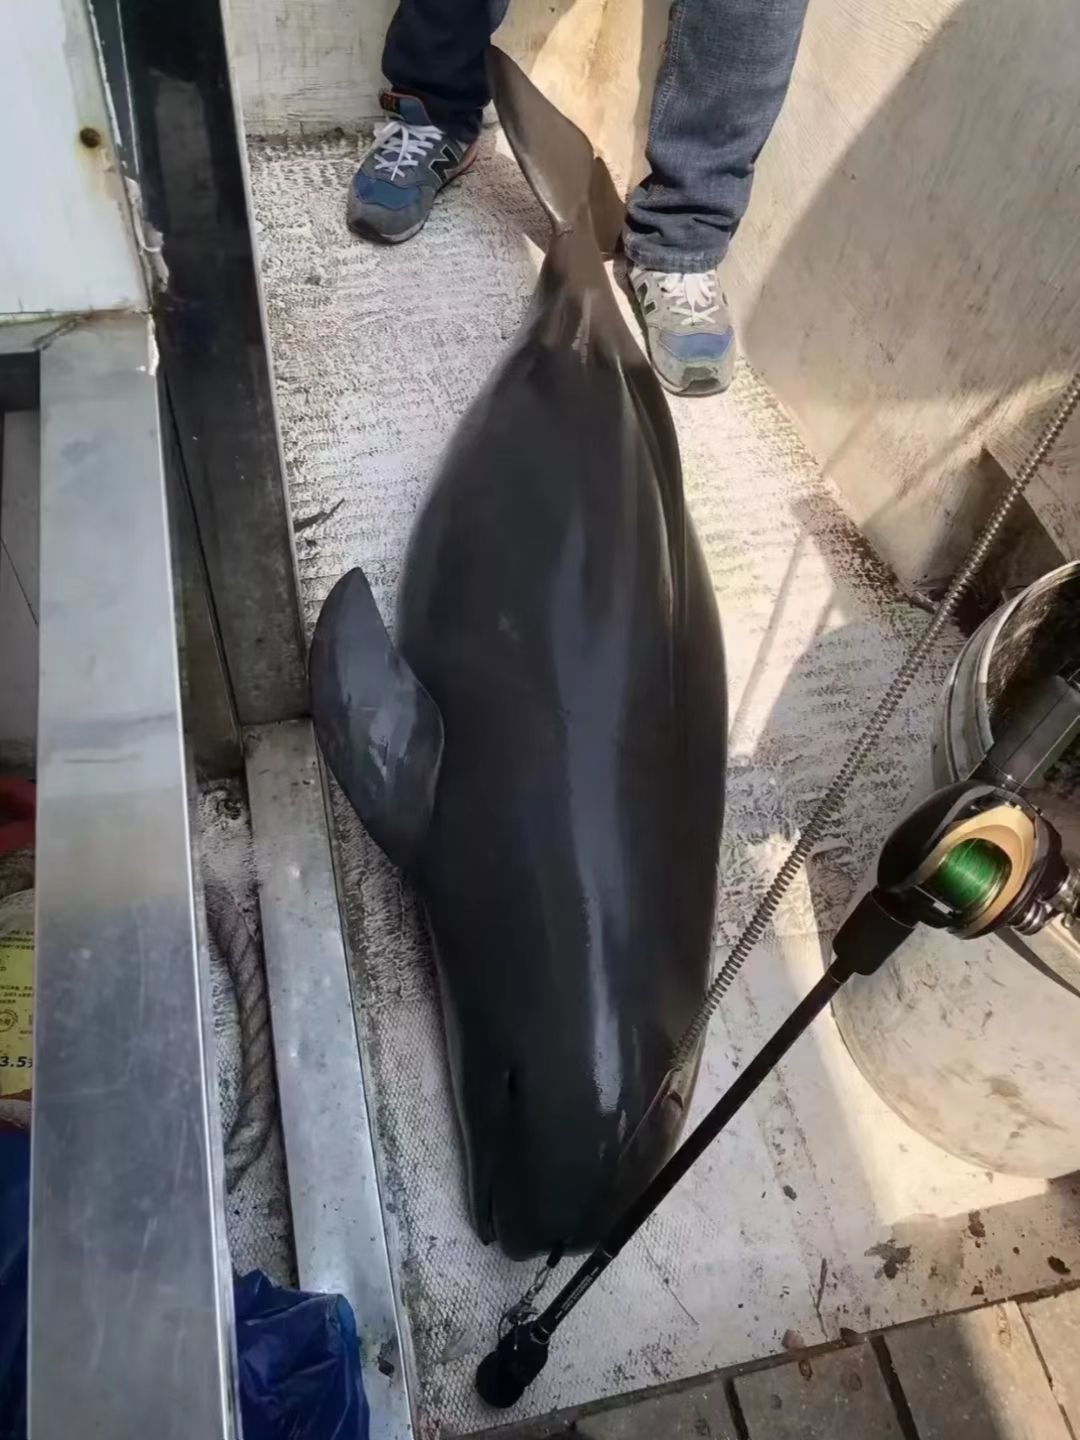 网传疑似非法捕捞江豚的图片。 图片源自网络